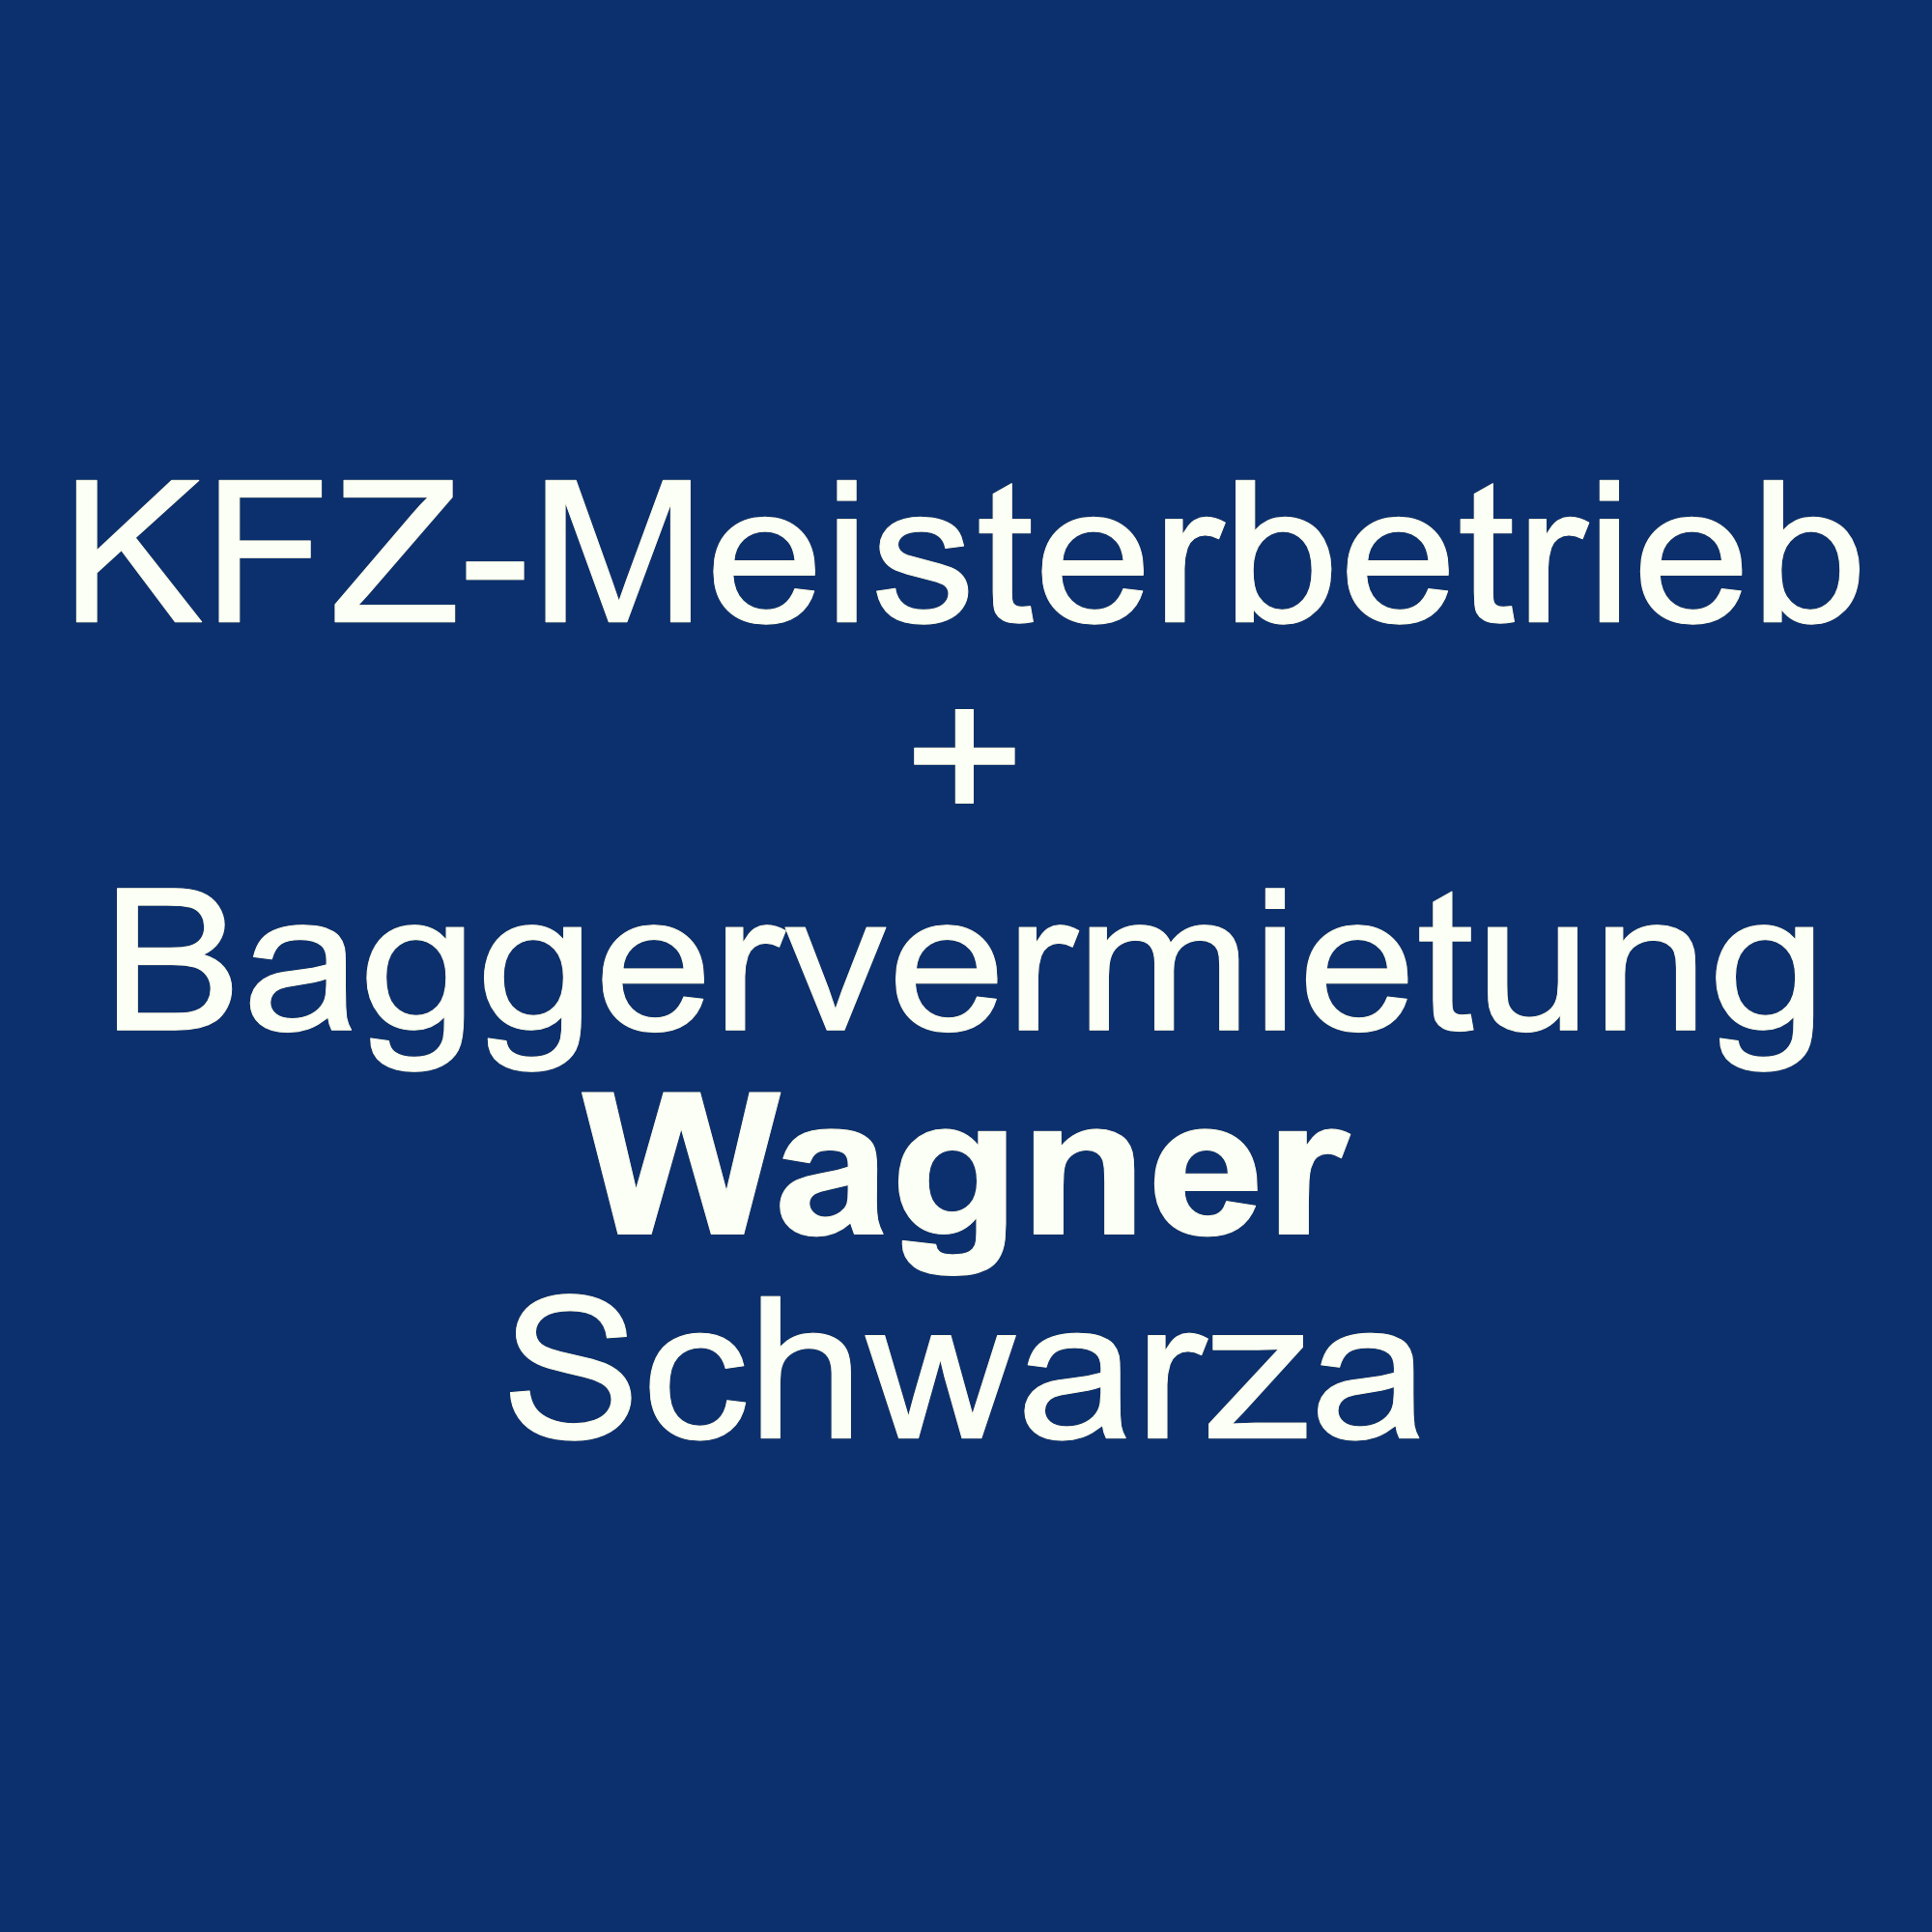 KFZ-Meisterbetrieb + Baggervermietung Wagner Schwarza Logo